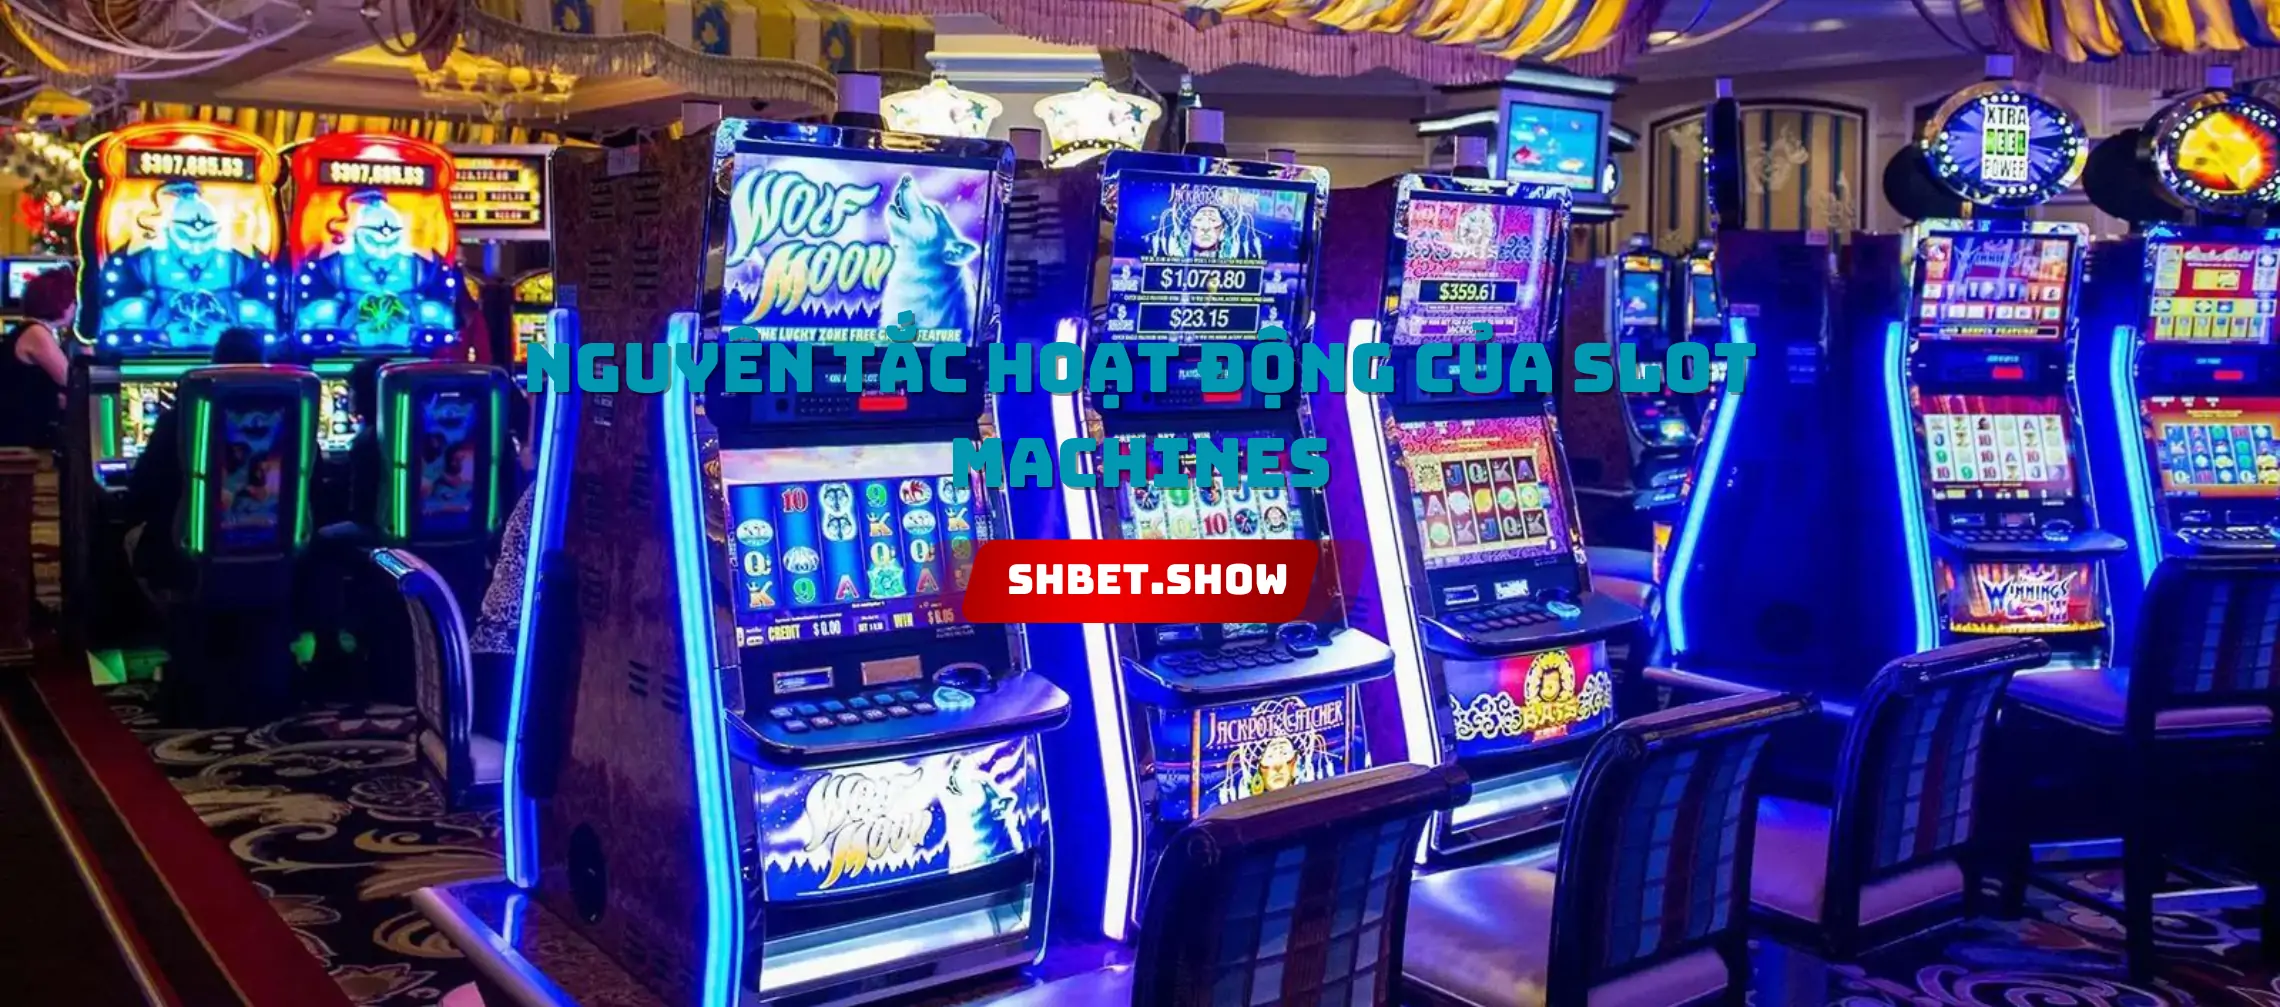 Nguyên tắc hoạt động của Slot Machines